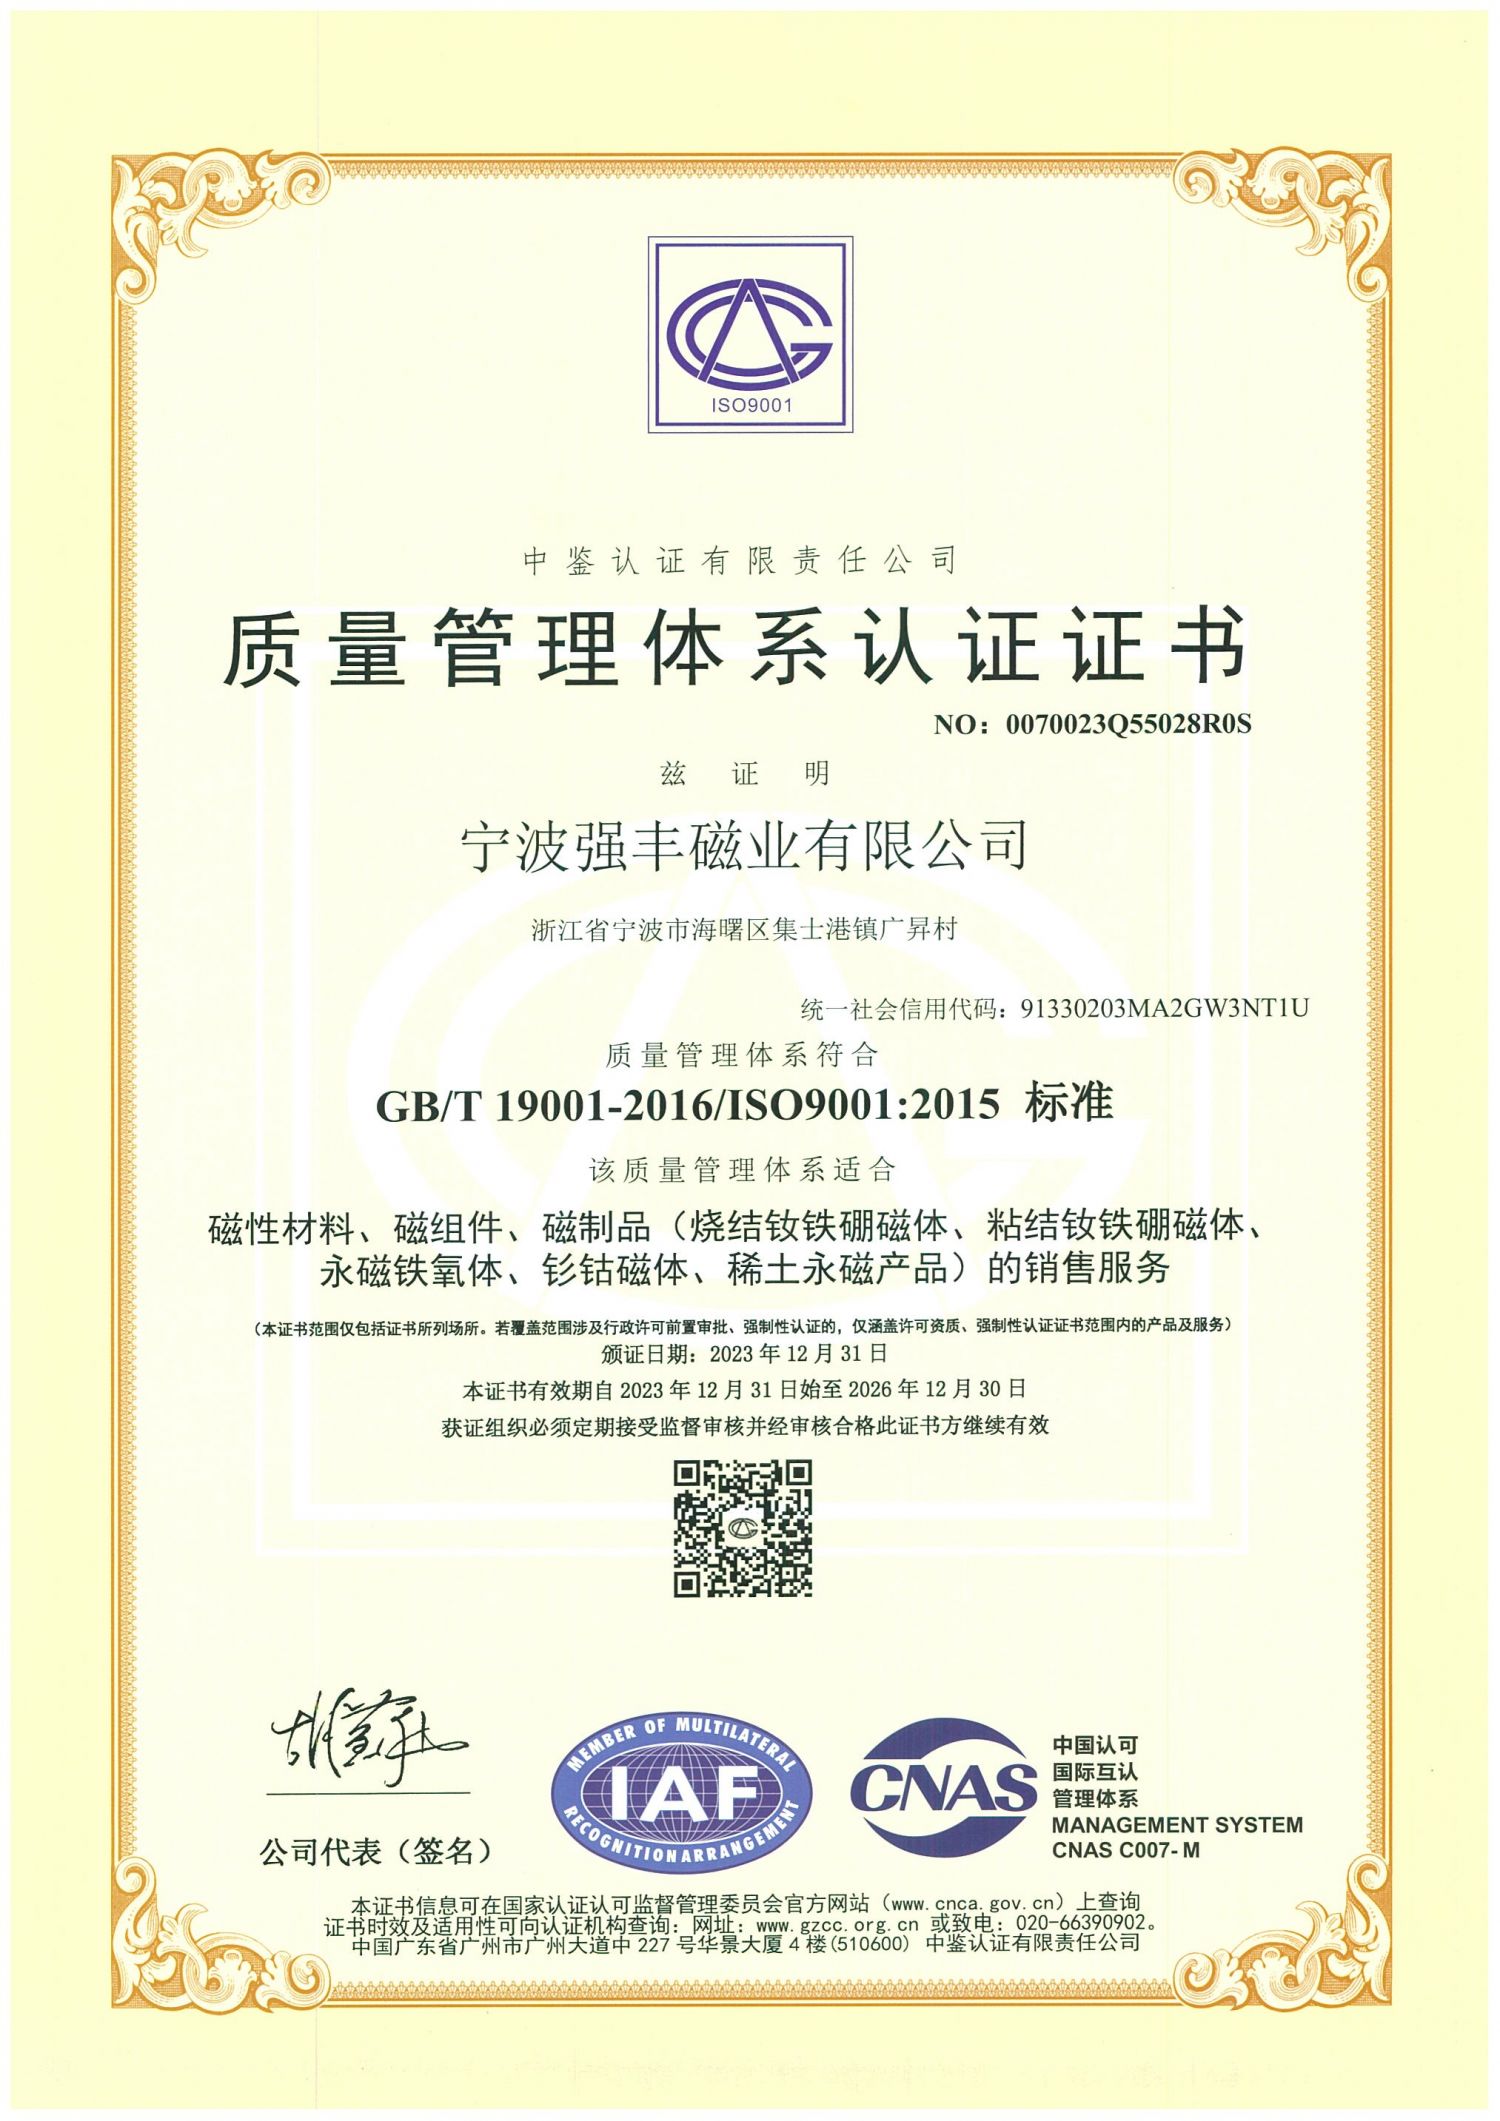 9001:2015质量管理体系认证证书